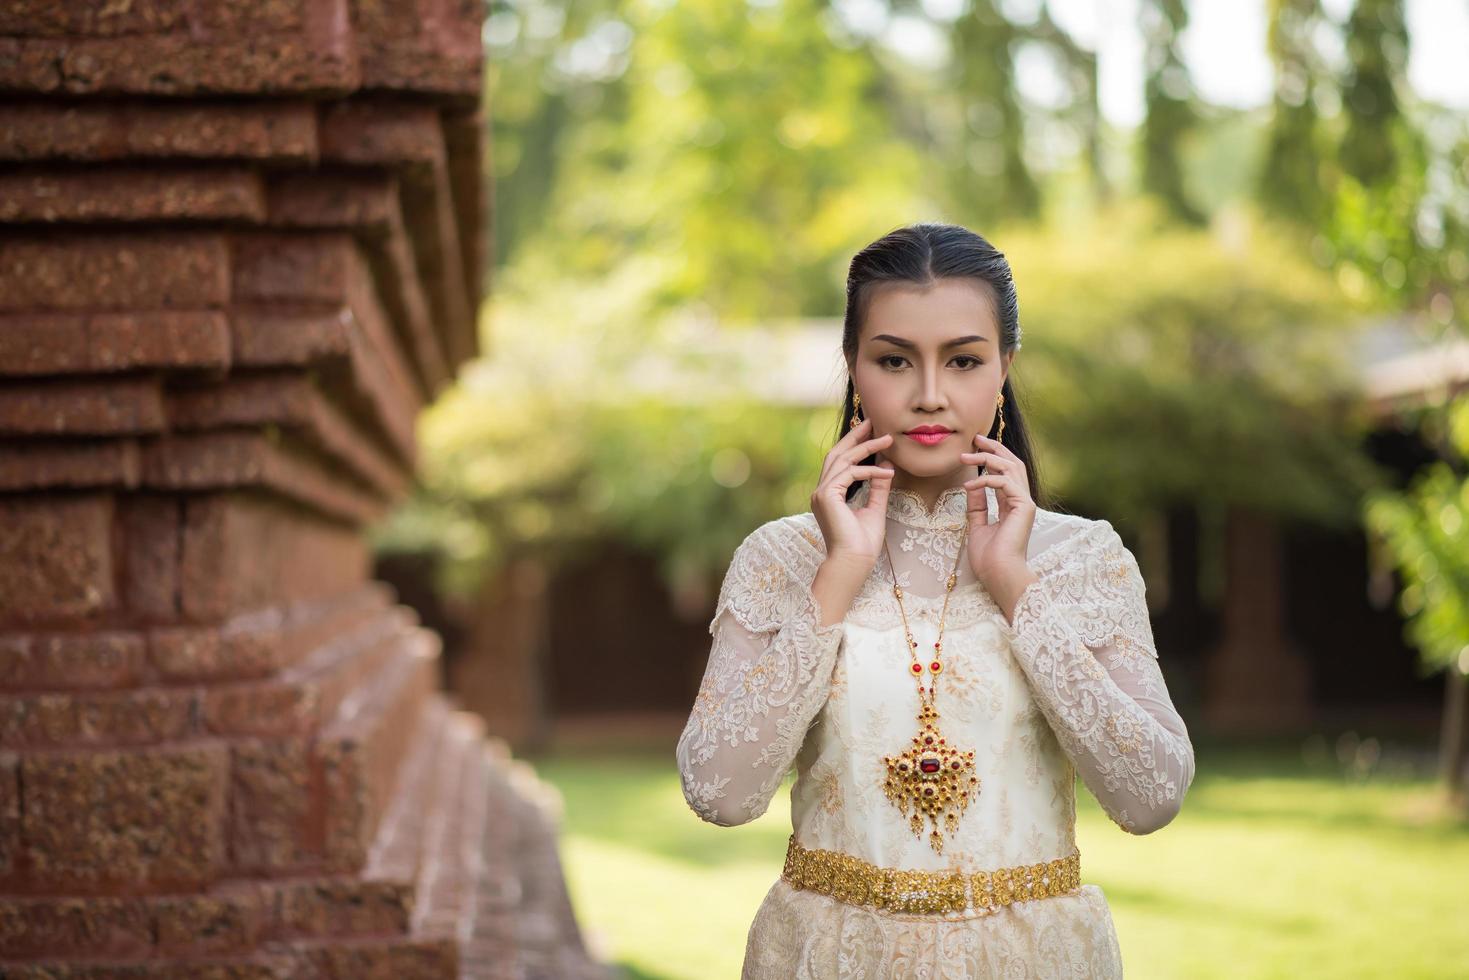 mulher linda com vestido tailandês típico foto